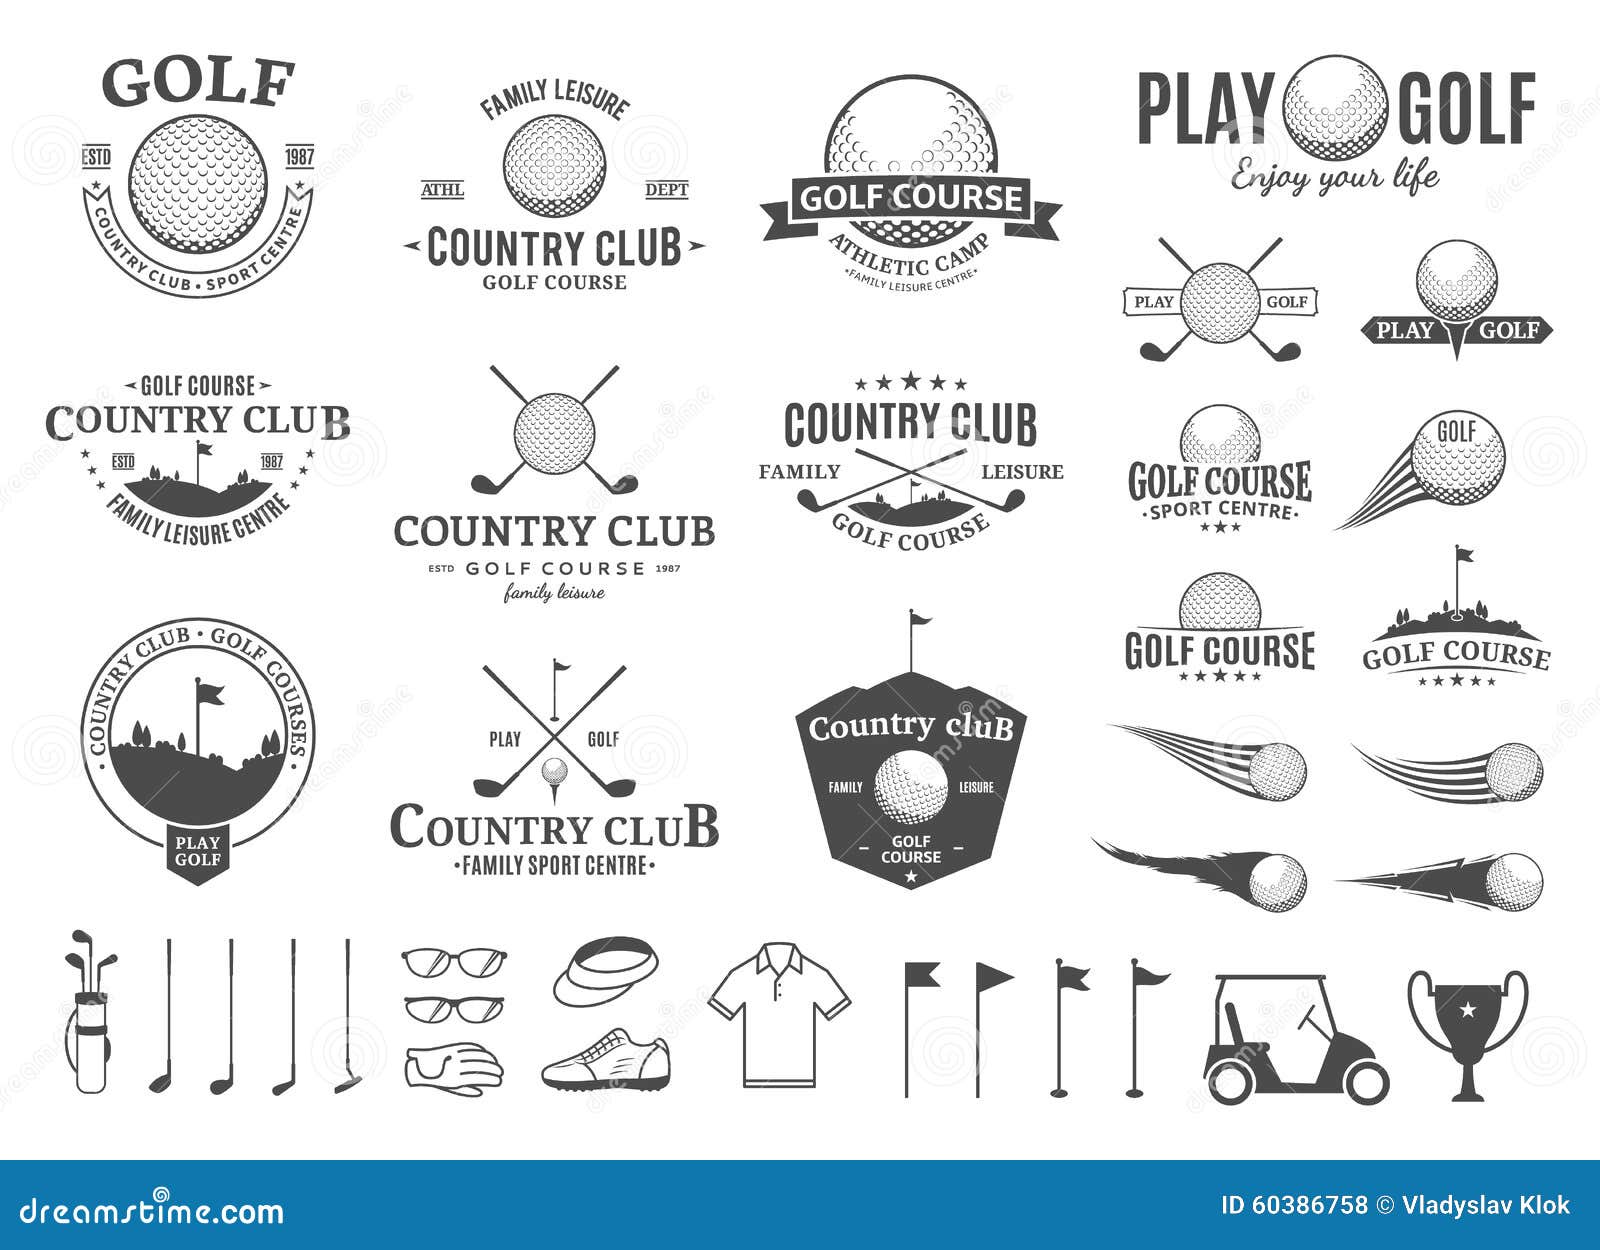 Thiết kế golf logos độc đáo và chuyên nghiệp cho các doanh nghiệp golf